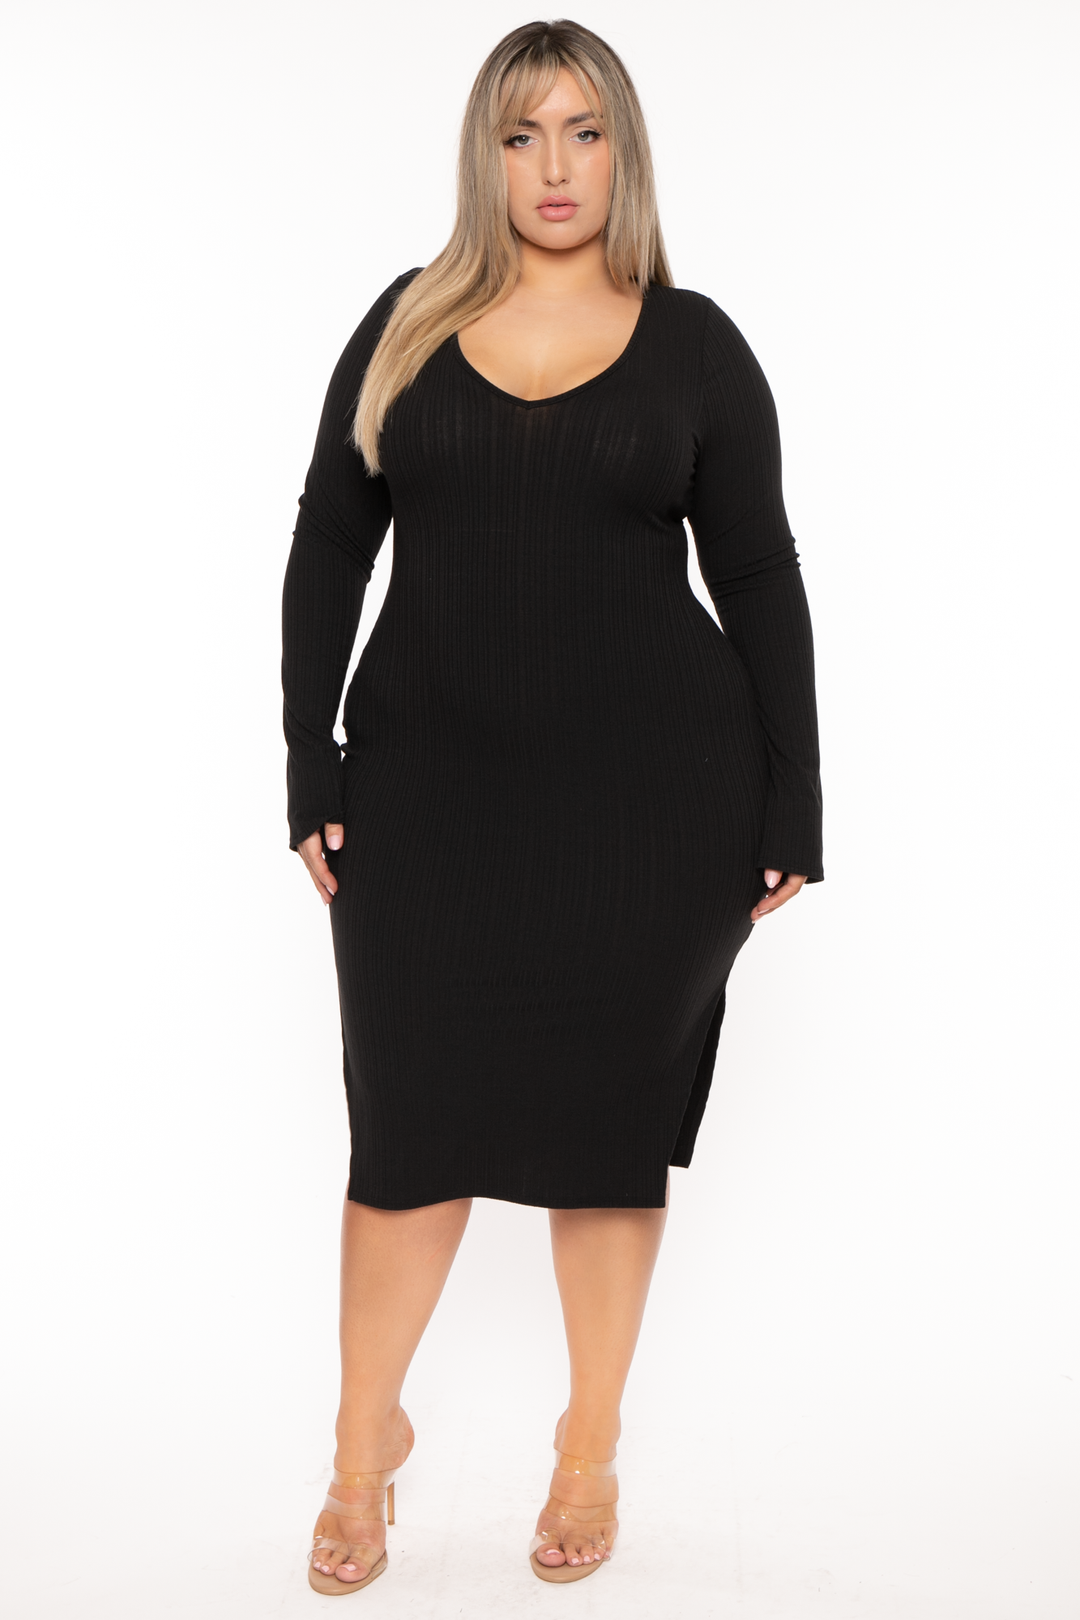 Curvy Sense Dresses 1X / Black Plus Size Adeline Ribbed  Midi  Dress - Black